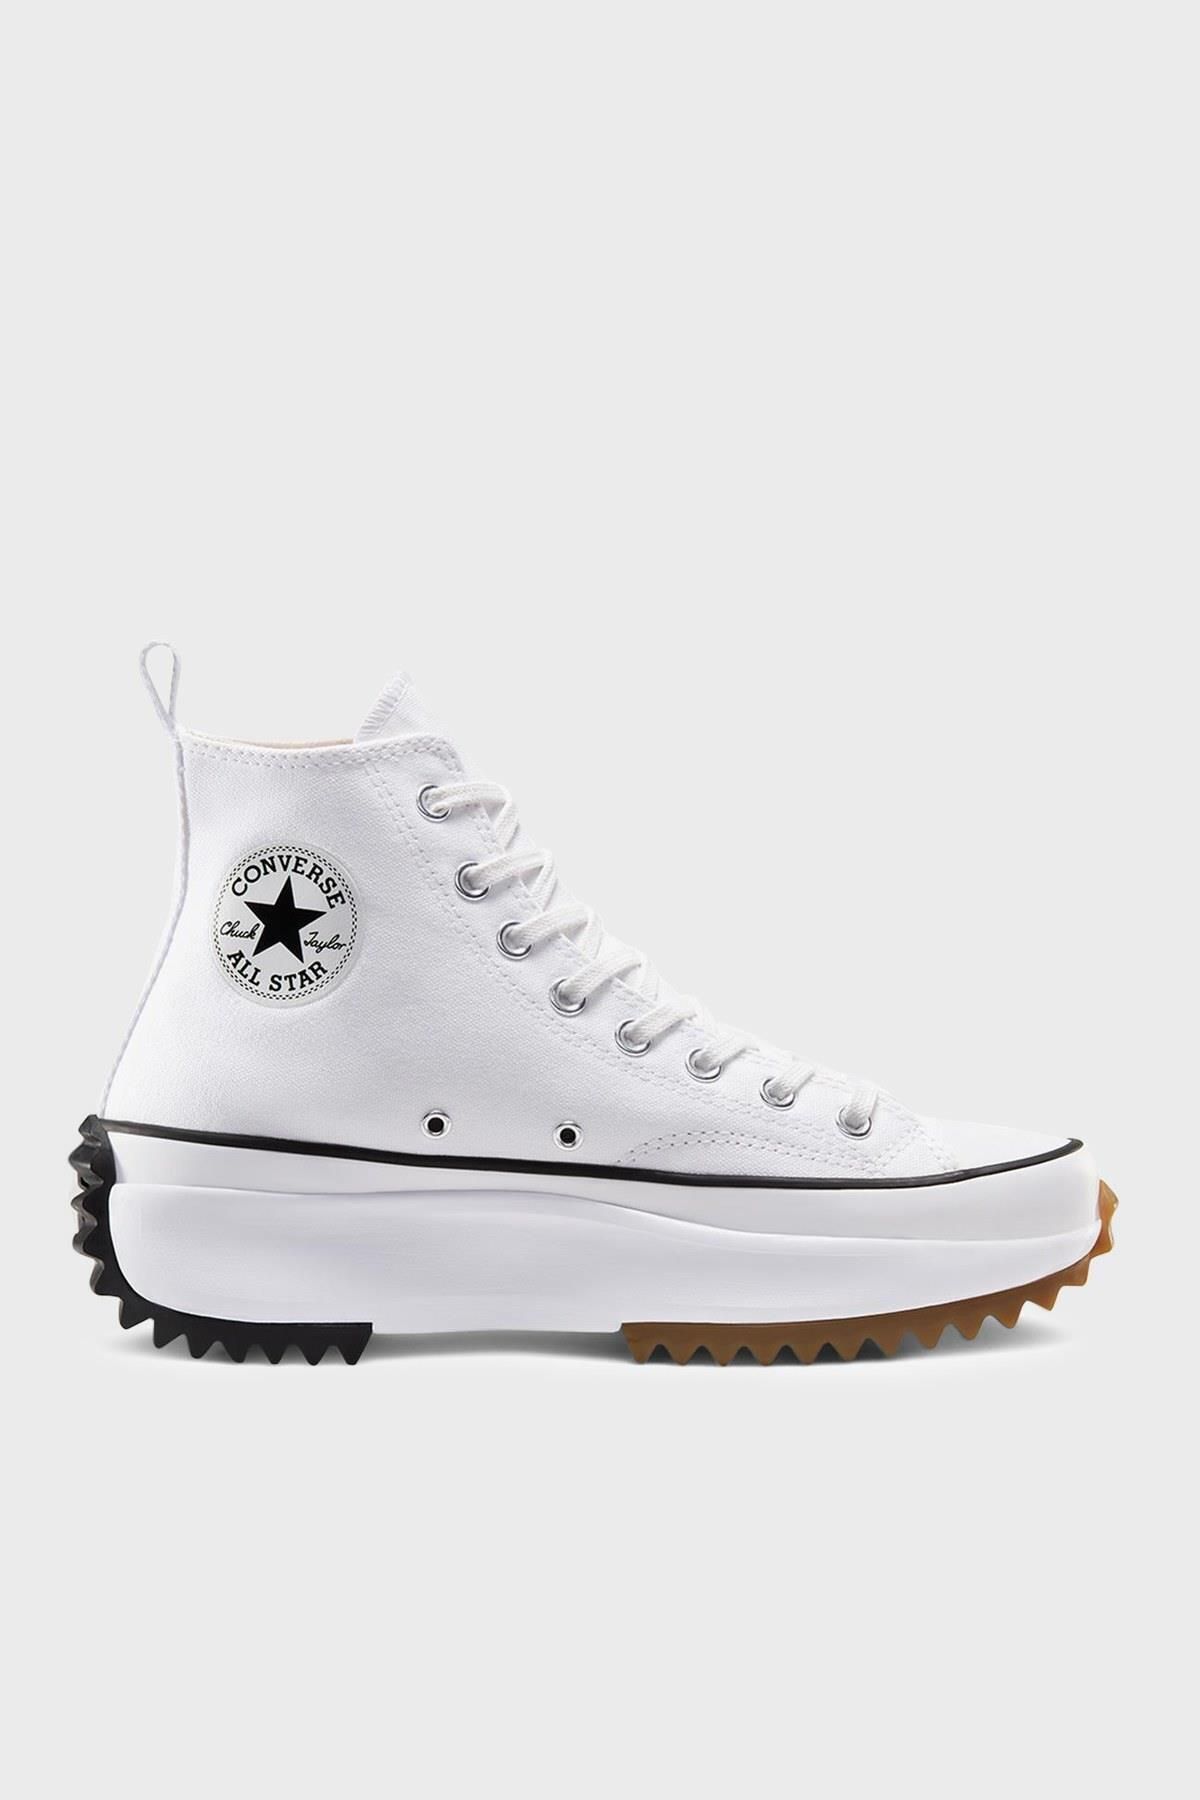 Converse Kadın Sneaker 166799c Run Star Hıke Canvas Platform Beyaz/sıyah Kanvas